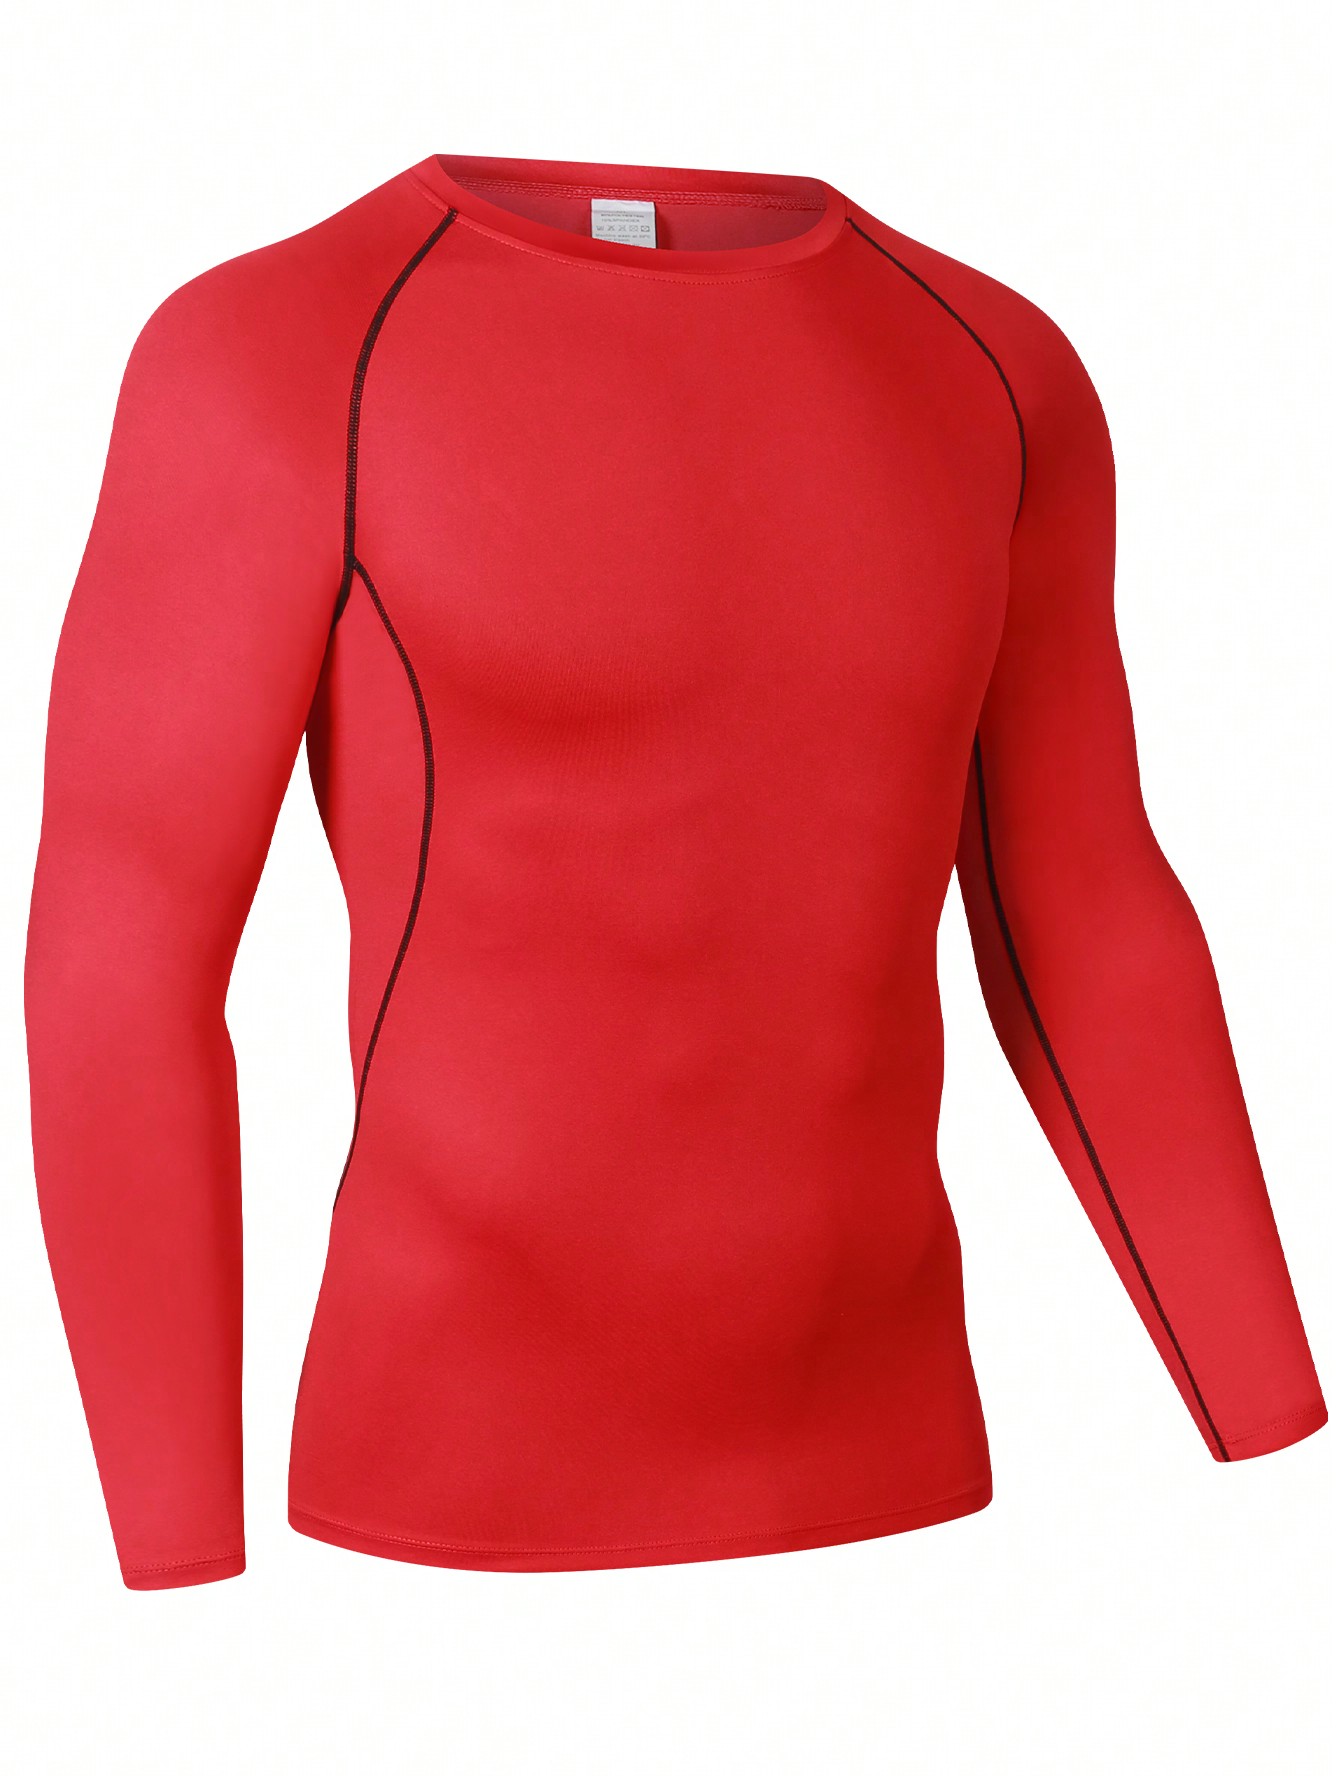 Мужская эластичная компрессионная рубашка для фитнеса с длинными рукавами, красный мужская футболка для бега бега быстросохнущая компрессионная облегающая футболка для фитнеса тренажерного зала футбола мужская футбол